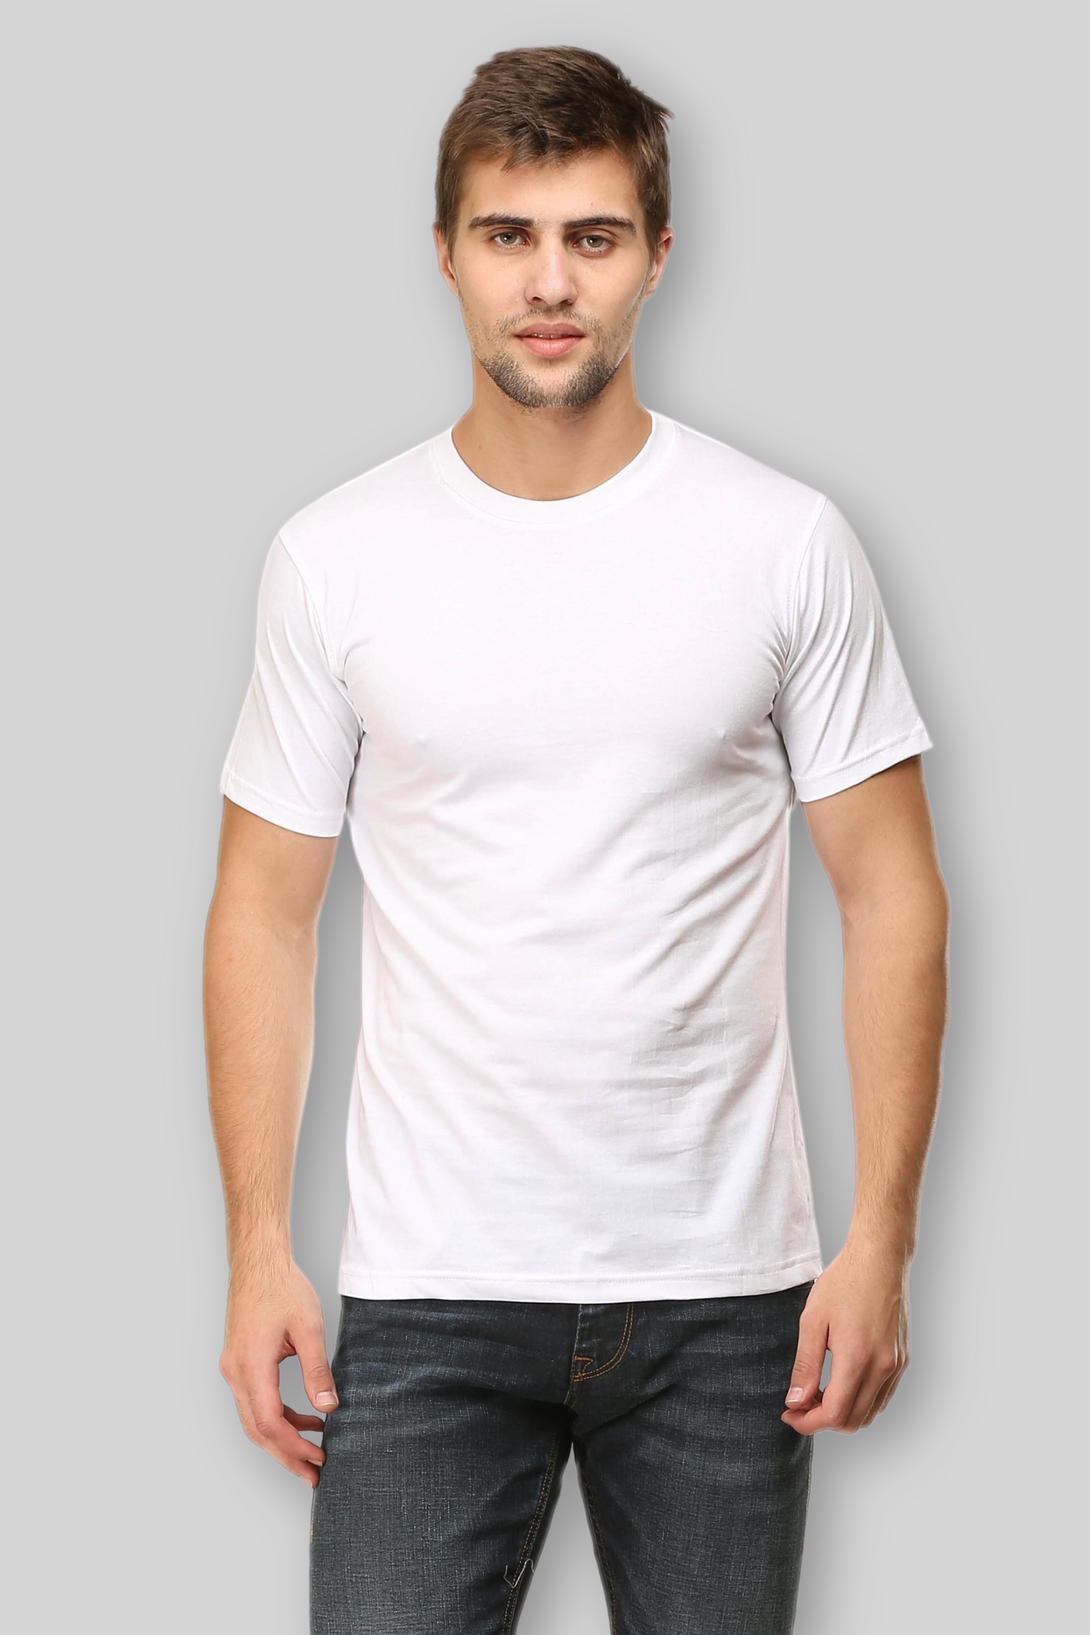 White T-Shirt For Men - WowWaves